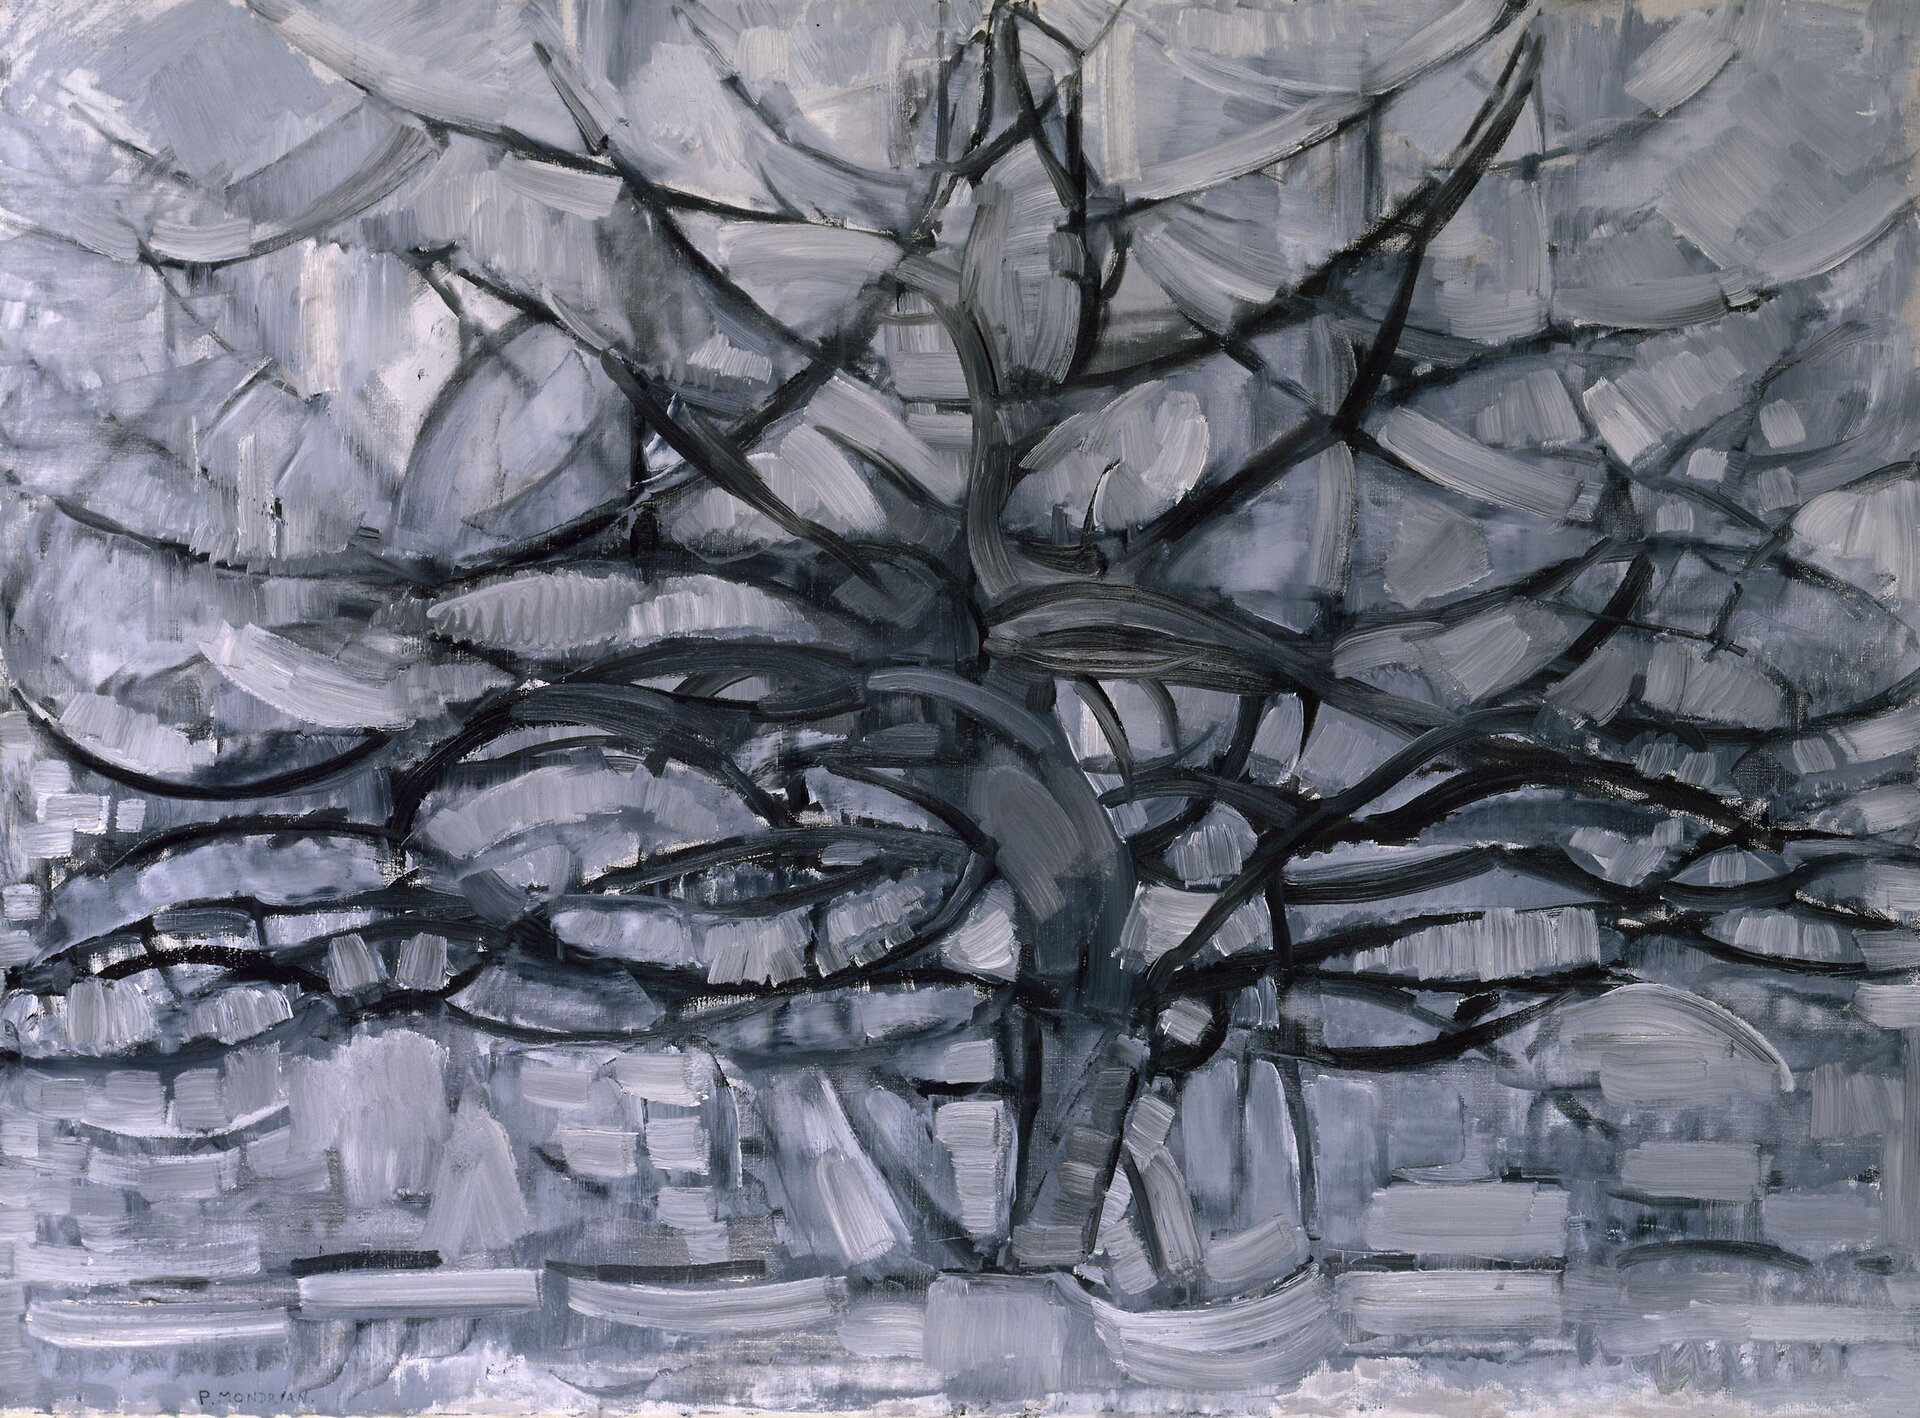 Ilustracja przedstawia obraz Pieta Mondriana pt. „Drzewo szare". Obraz ukazuje drzewo wykonane czarną barwą metodą kresek.